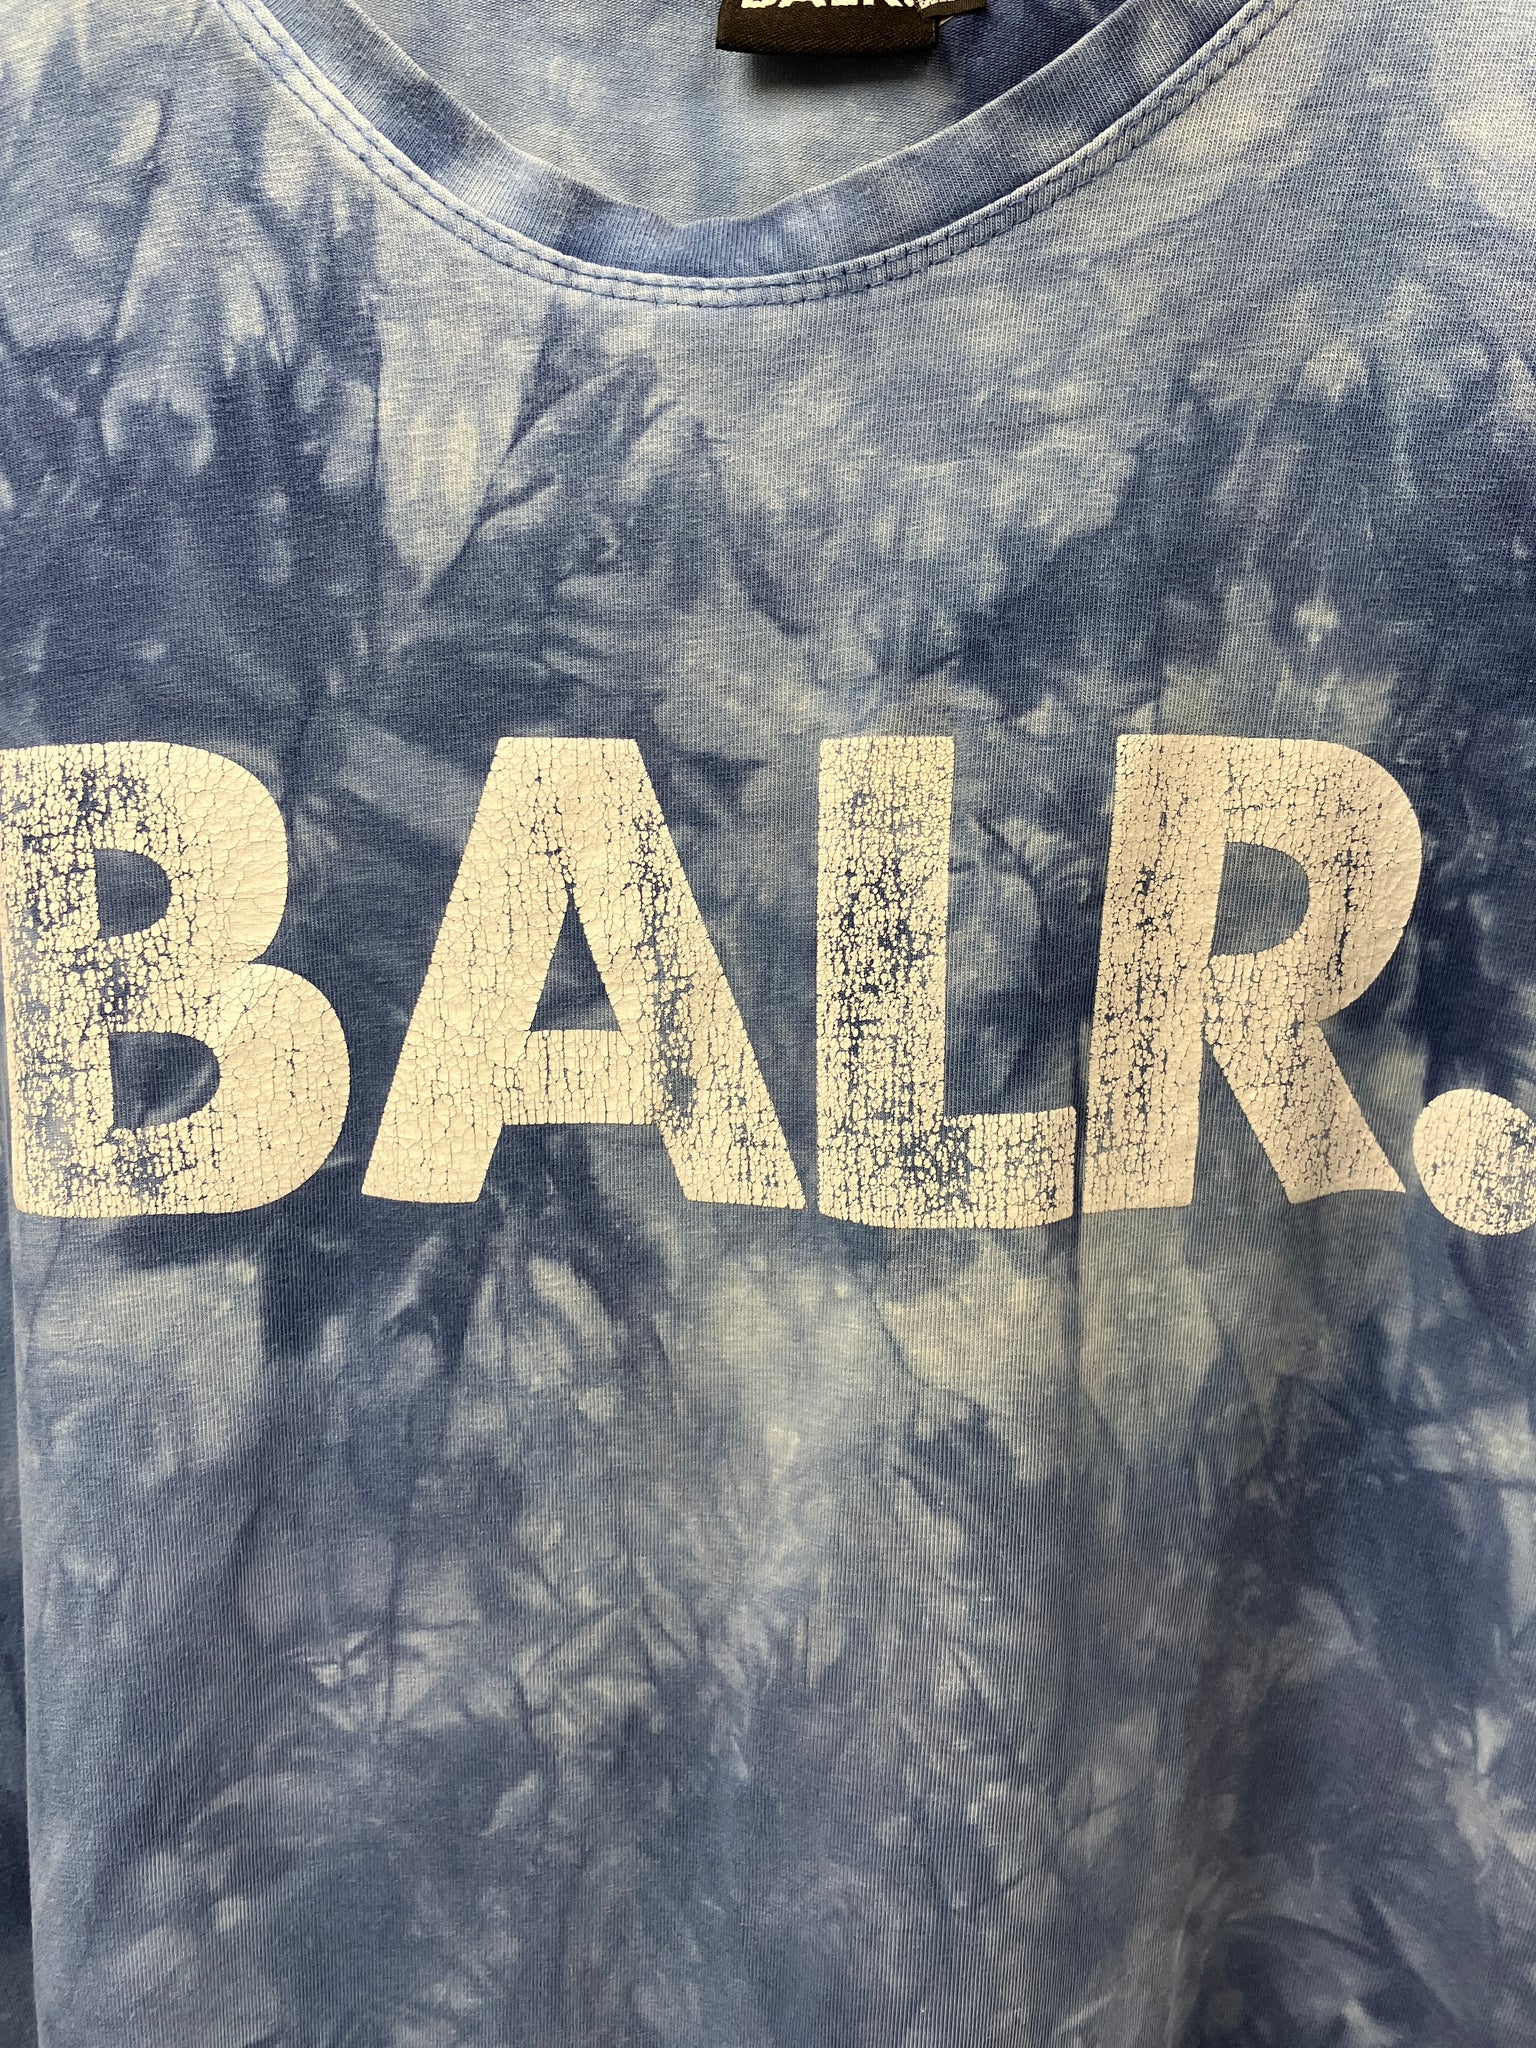 BALR T-Shirt